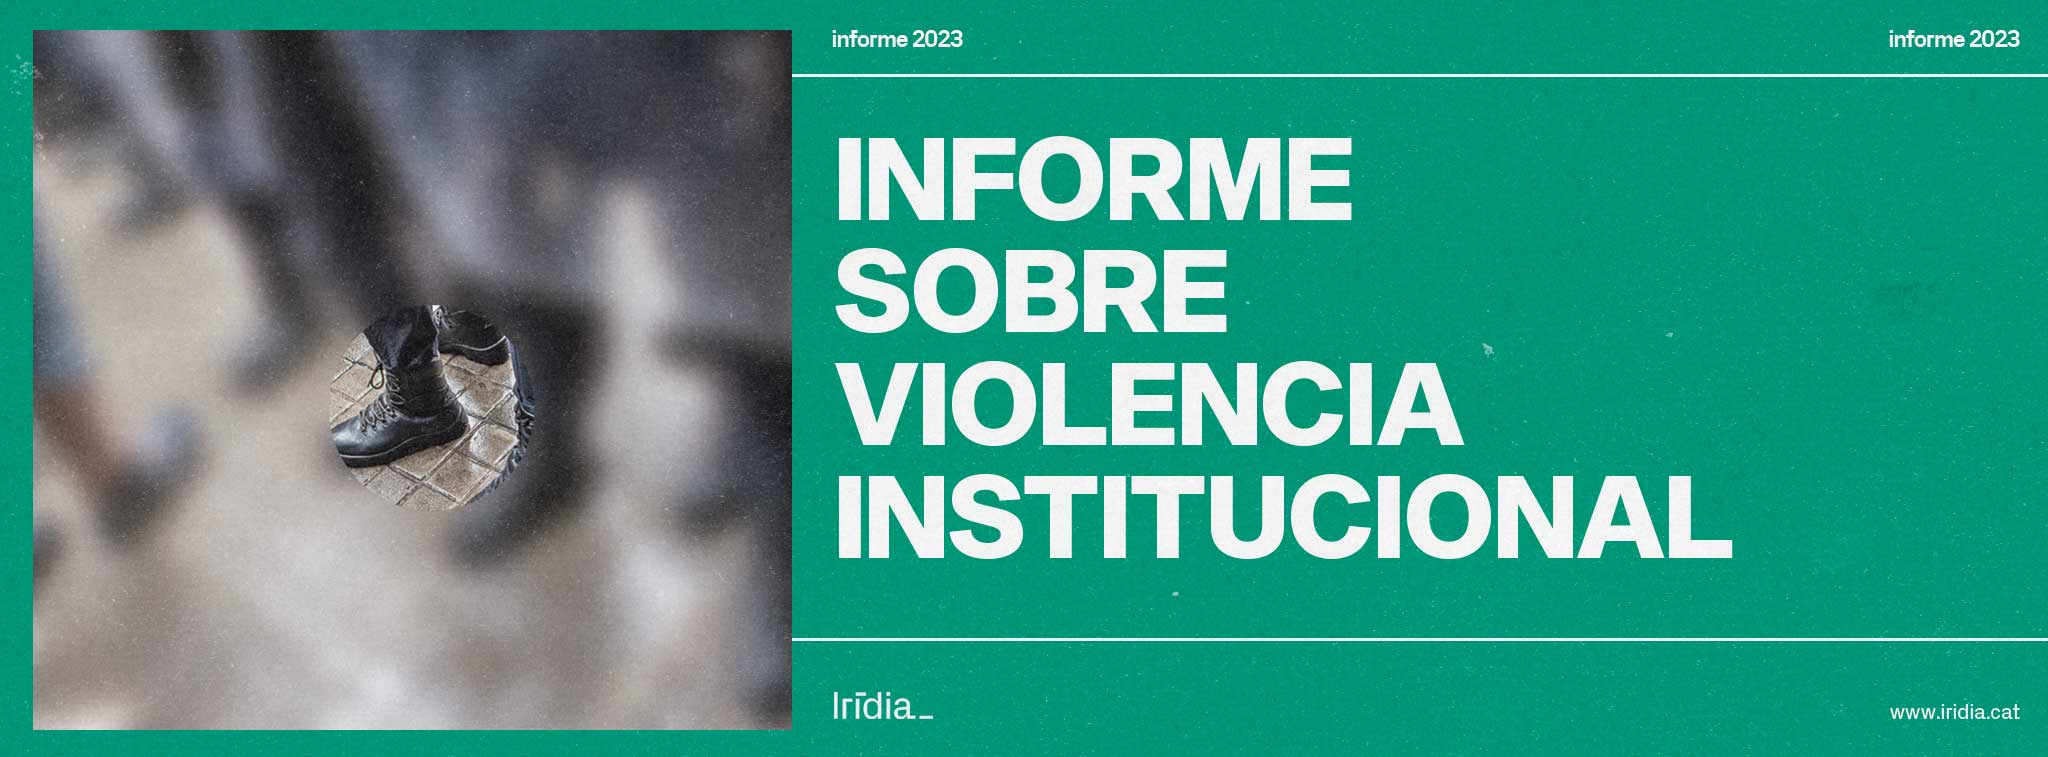 Informe sobre violencia institucional 2023